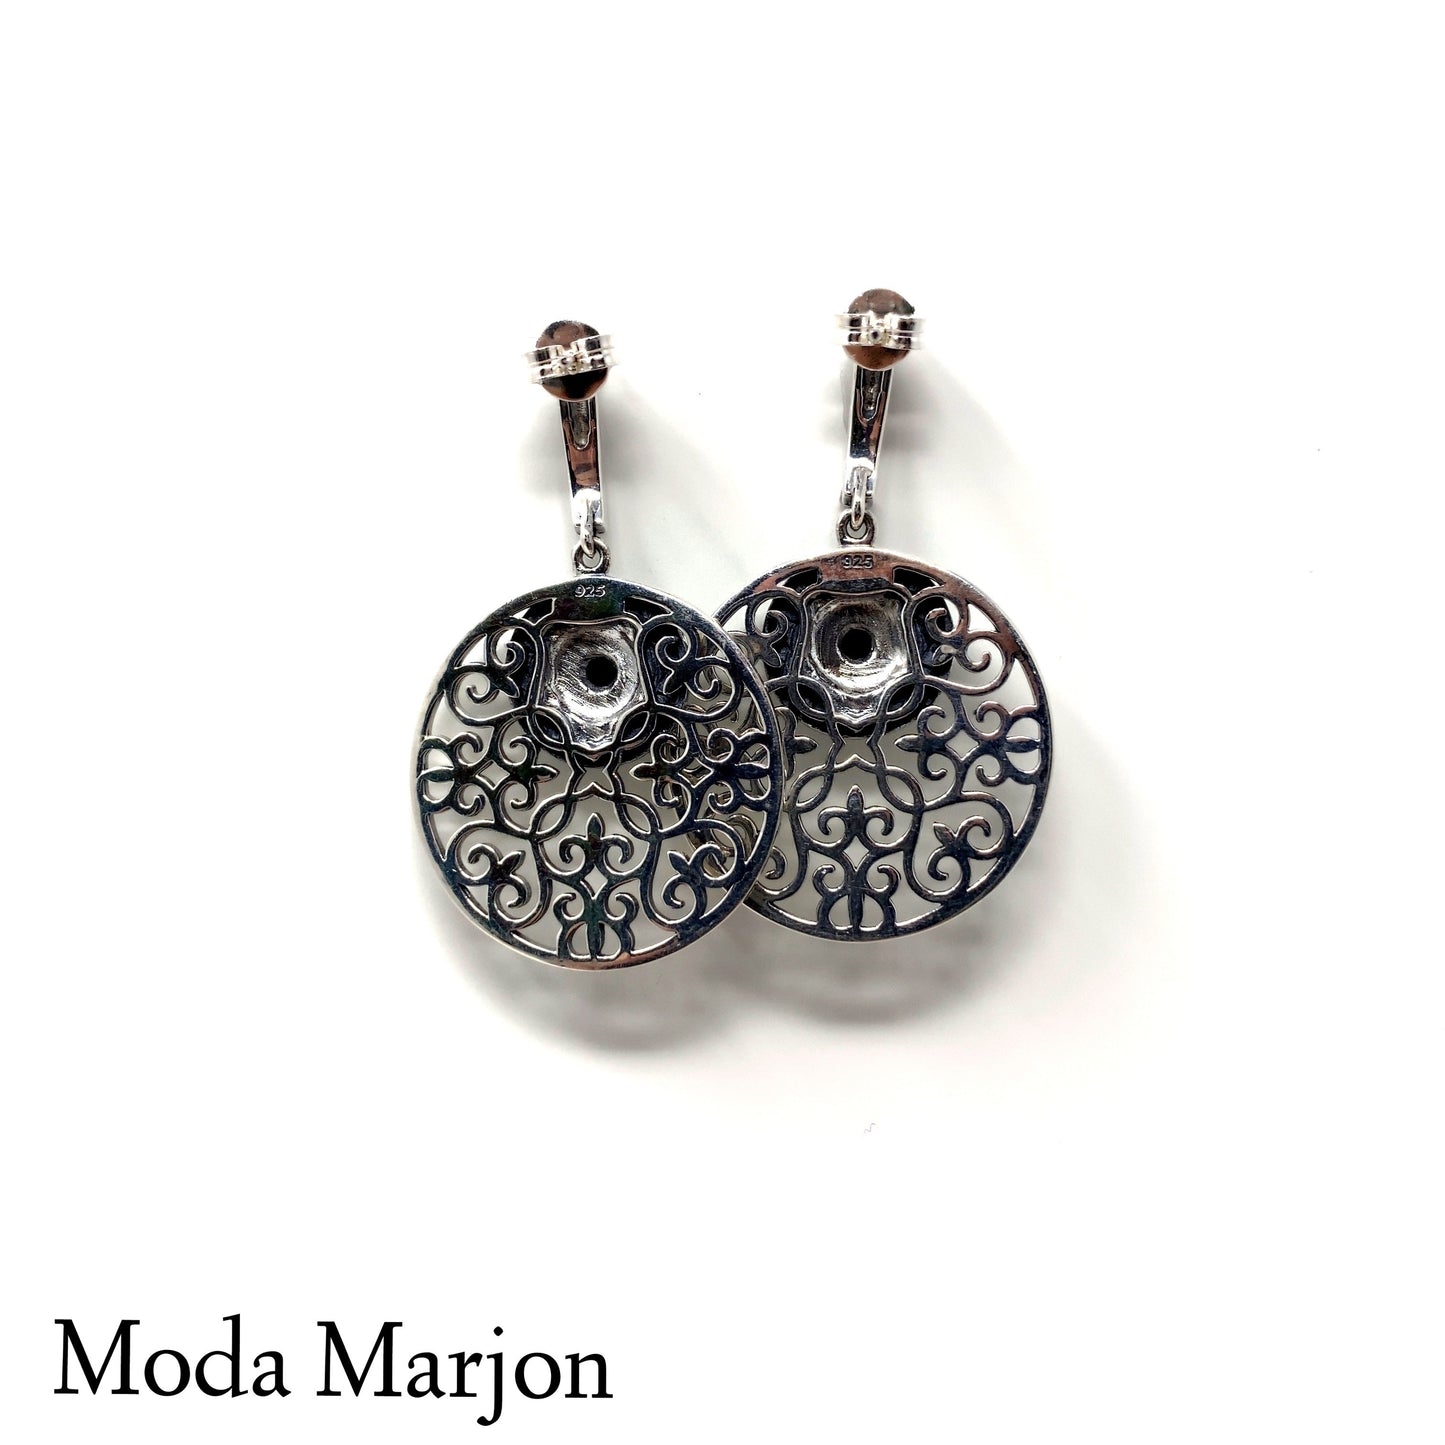 Moda Marjon black onyx and marcasite drop earrings - Moda Marjon 